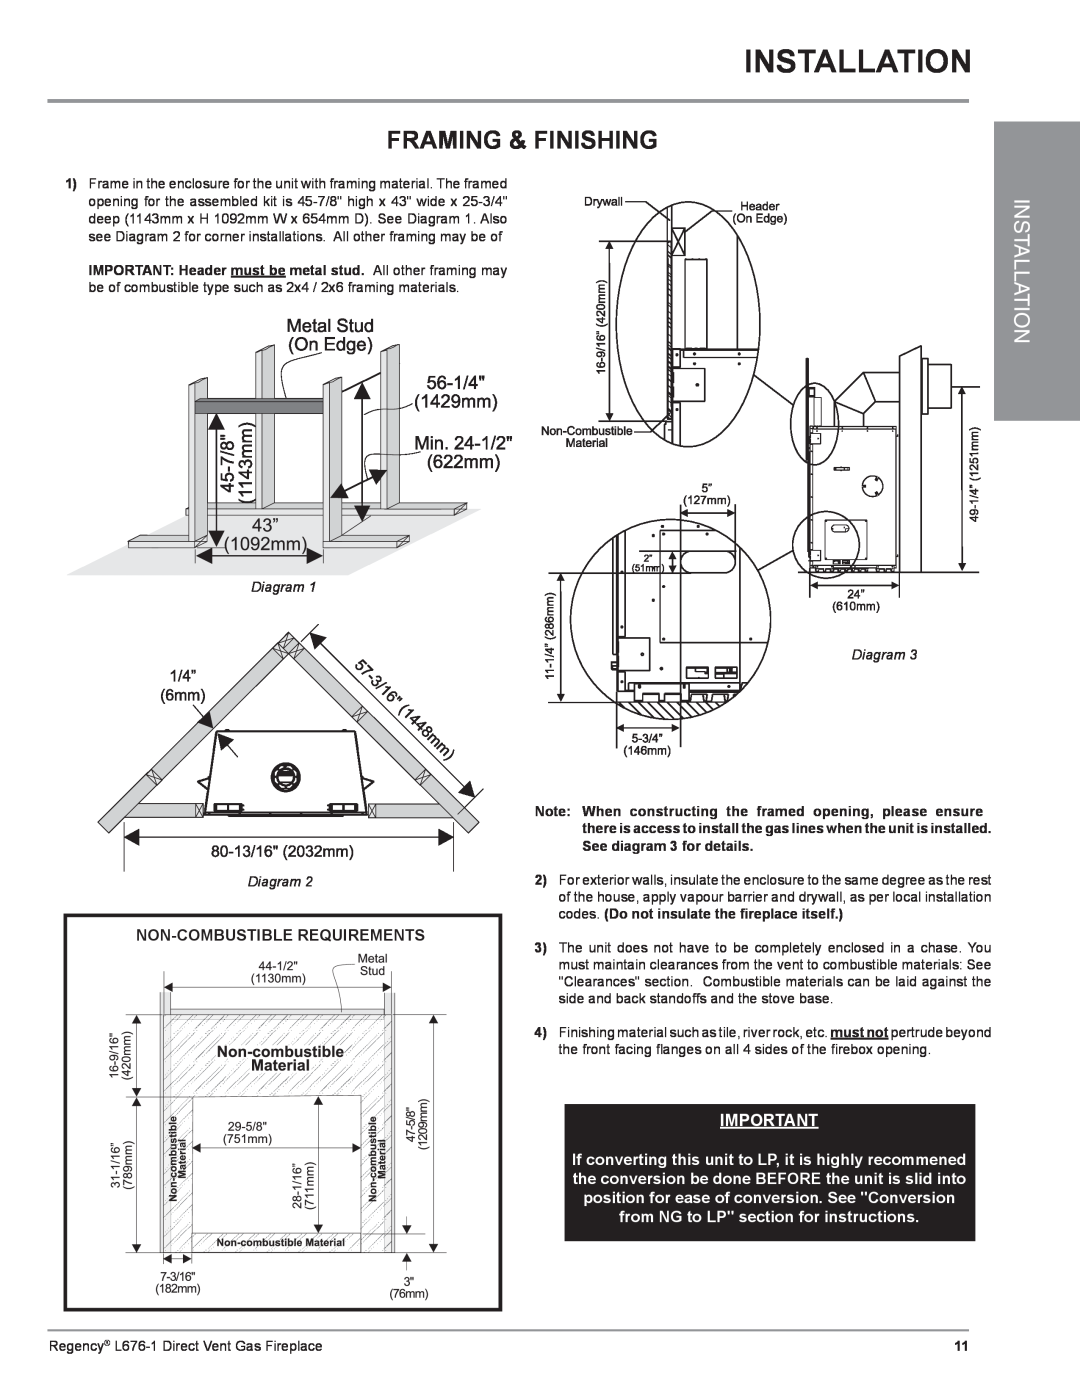 Regency L676-LP1, L676-NG1, L676-1 installation manual Installation, Framing & Finishing, Diagram Diagram 